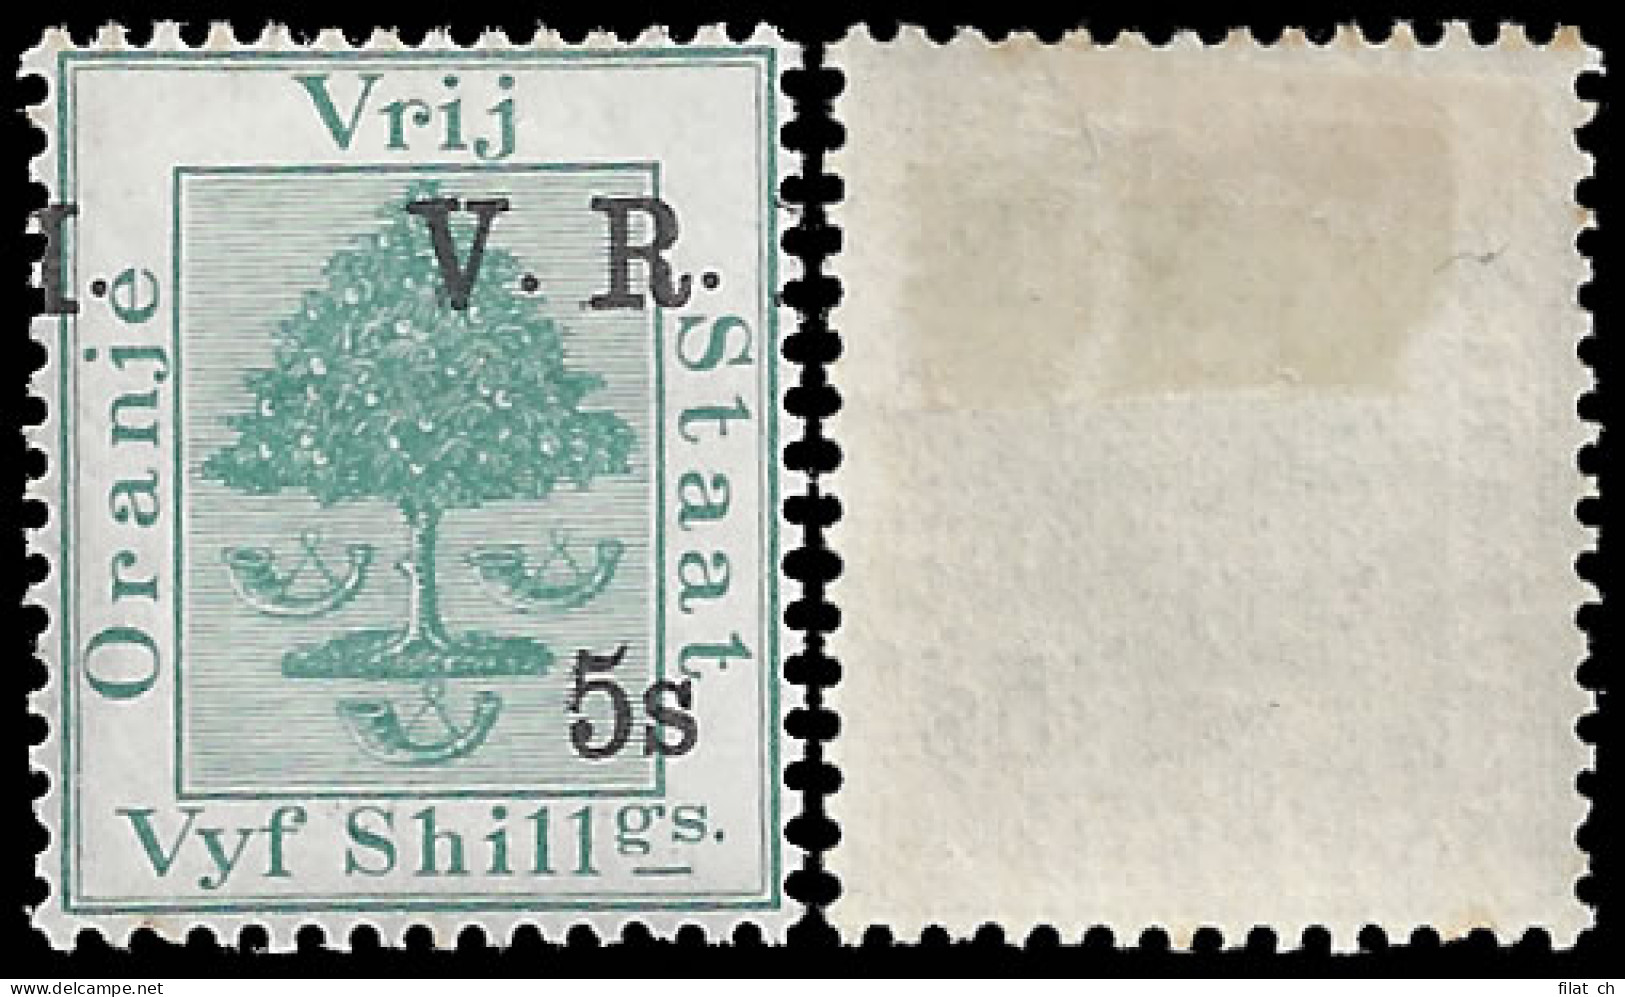 Orange Free State 1900 VRI SG122 5/- On 5/- Misplaced Overprint - Oranje Vrijstaat (1868-1909)